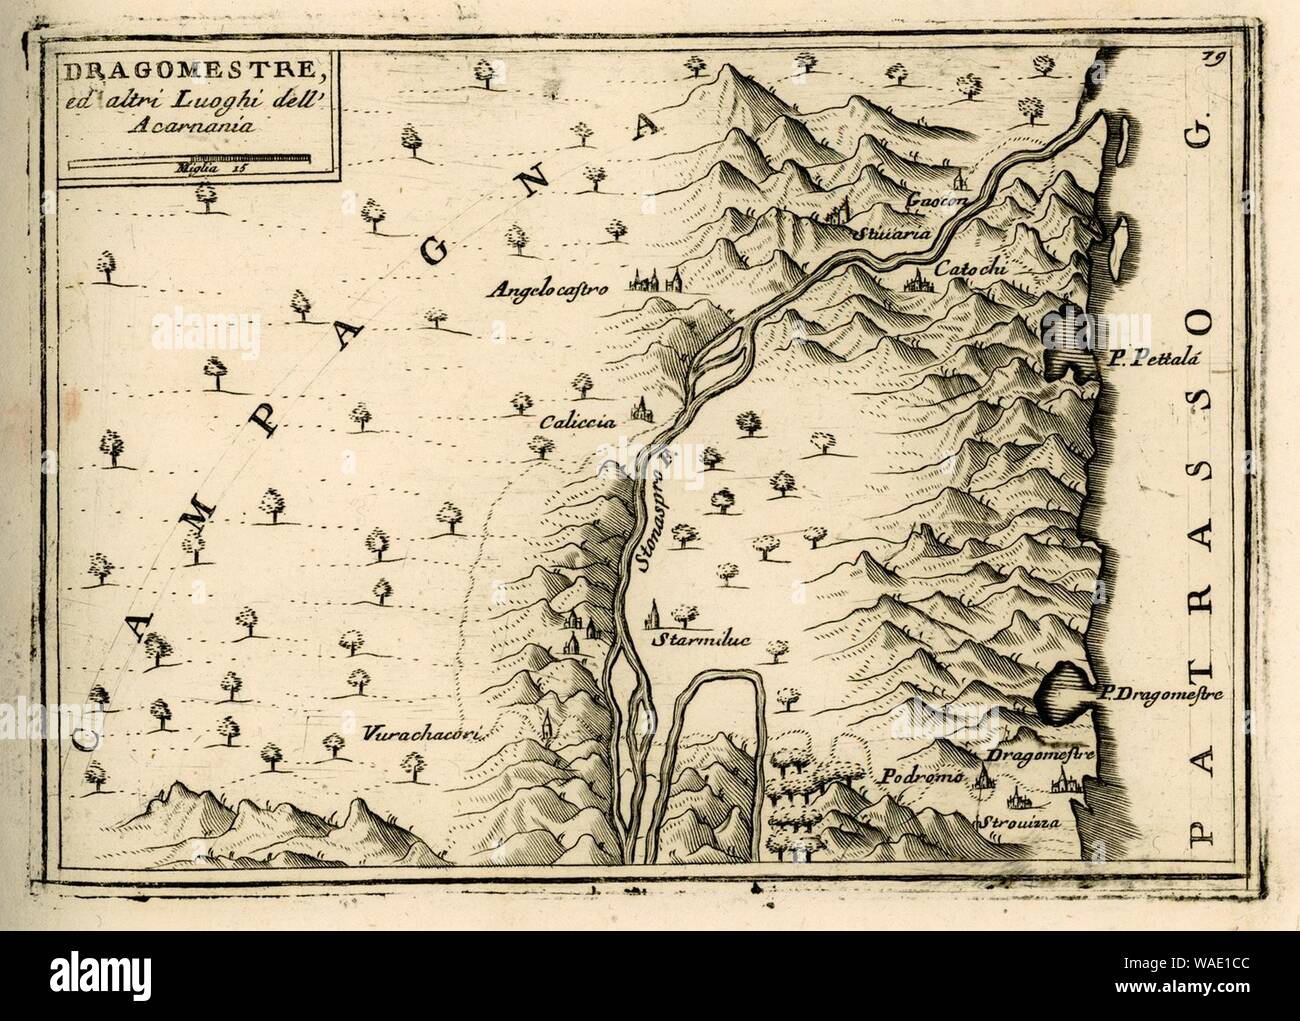 Dragomestre ed altri luoghi dell'Acarnania - Coronelli Vincenzo - 1688. Stock Photo